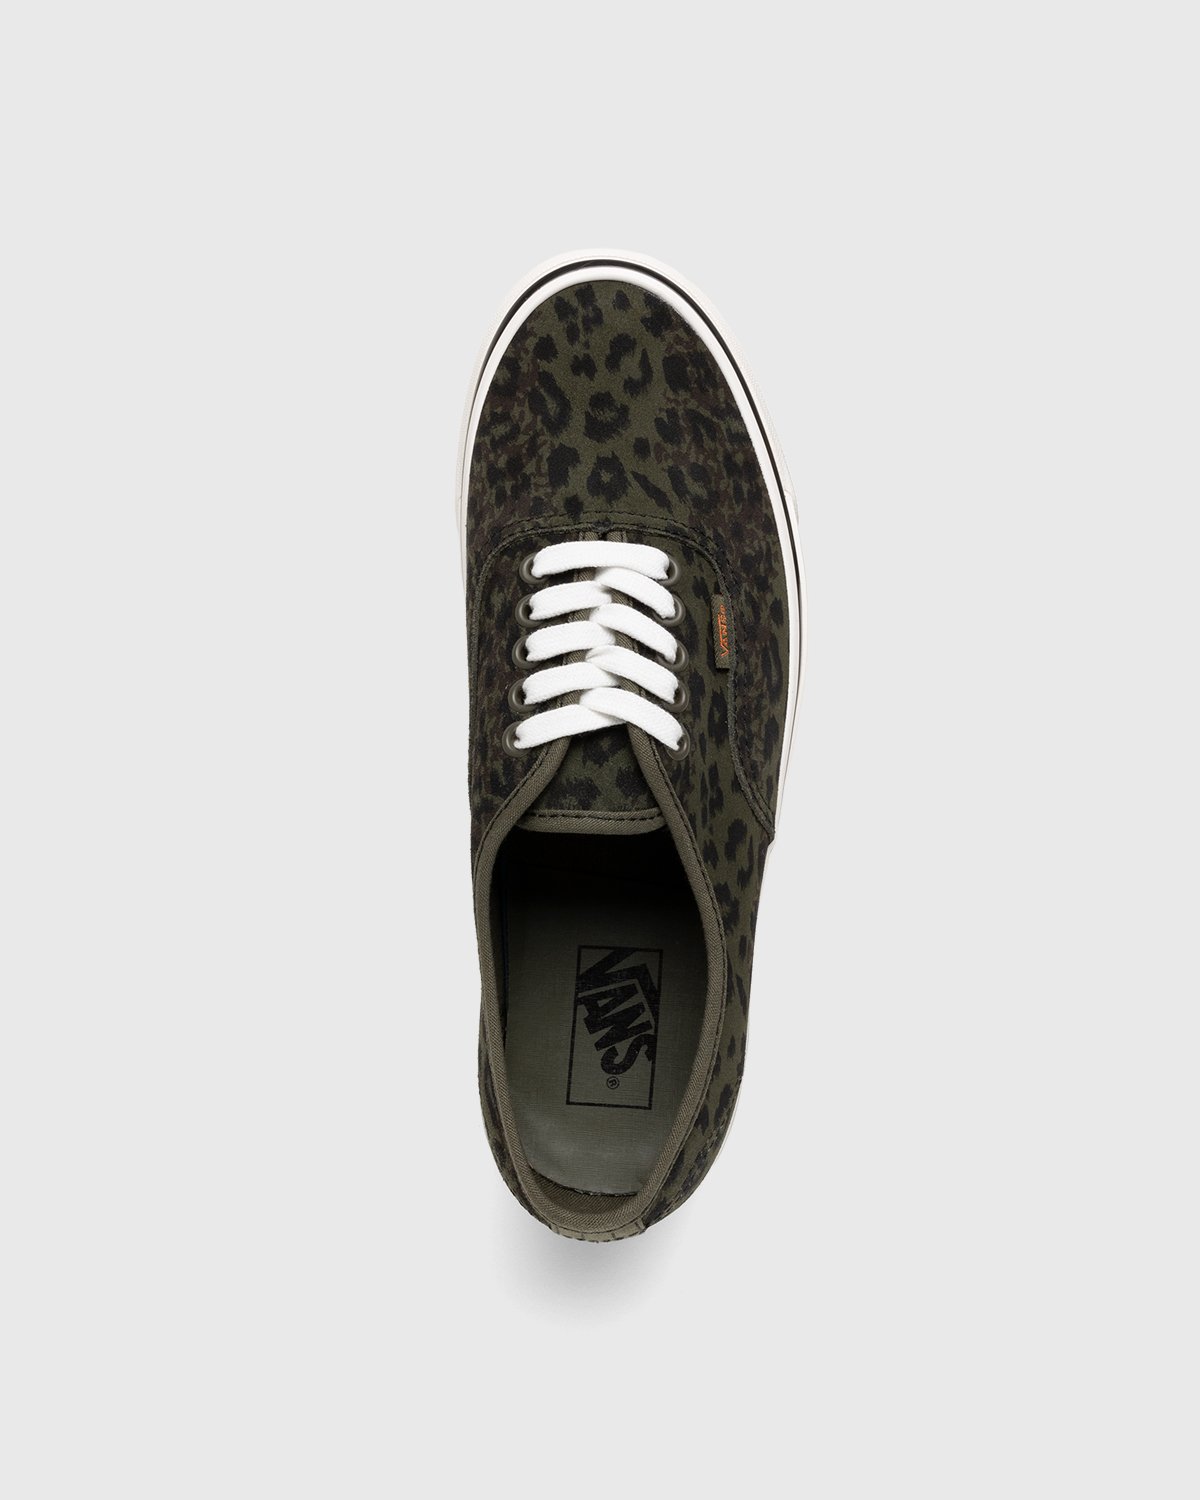 Vans - Anaheim Factory Authentic 44 DX Leopard Camo/Grape Leaf - Footwear - Green - Image 4